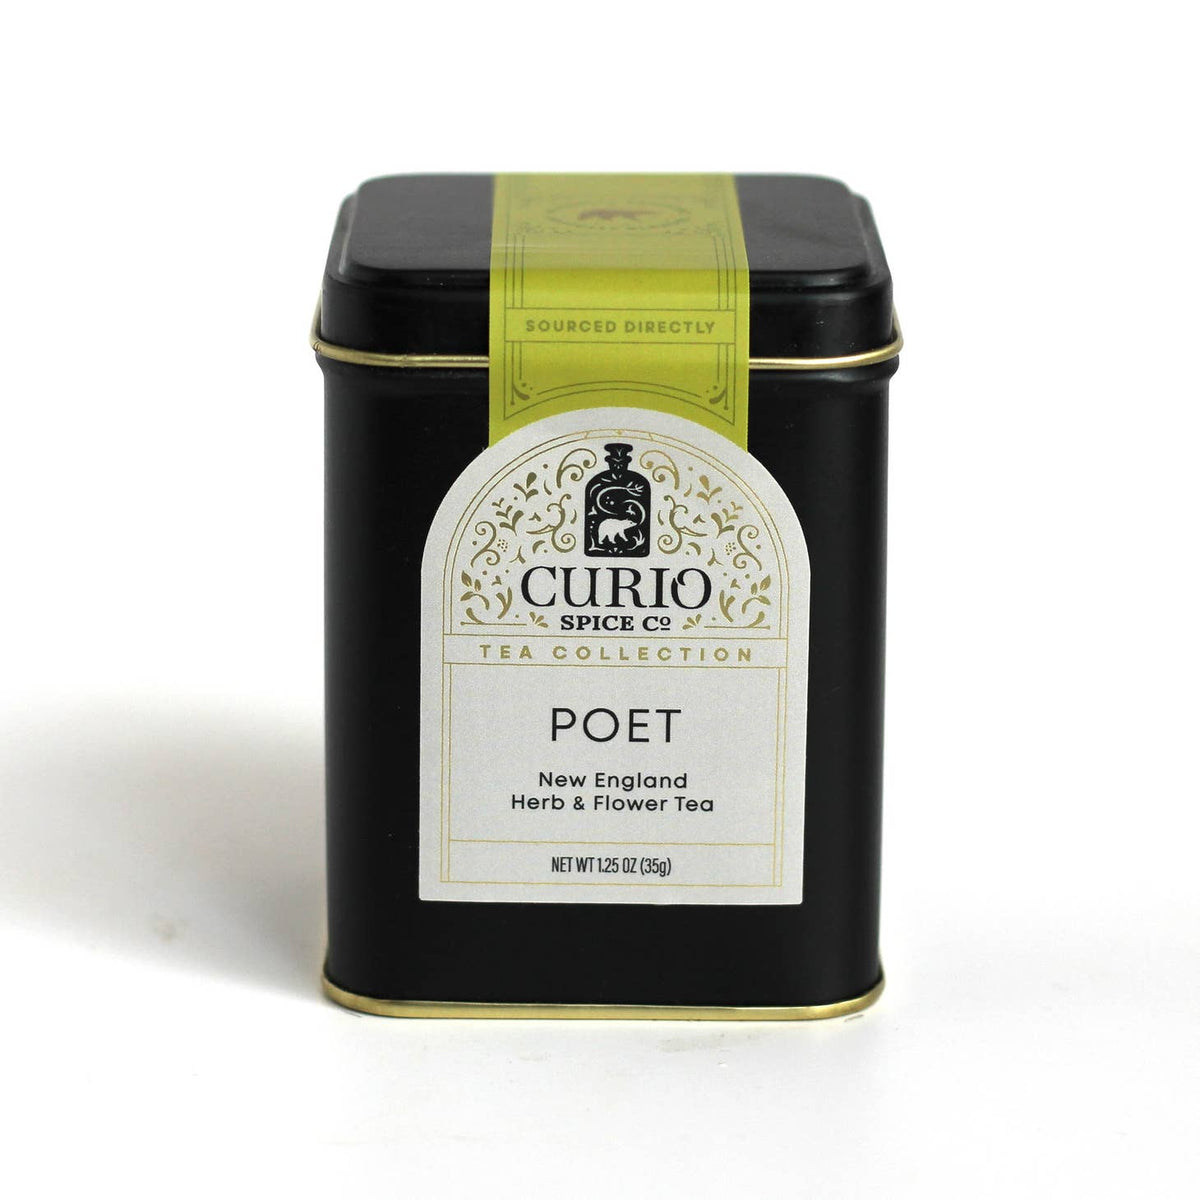 Curio Spice Co Poet Tea